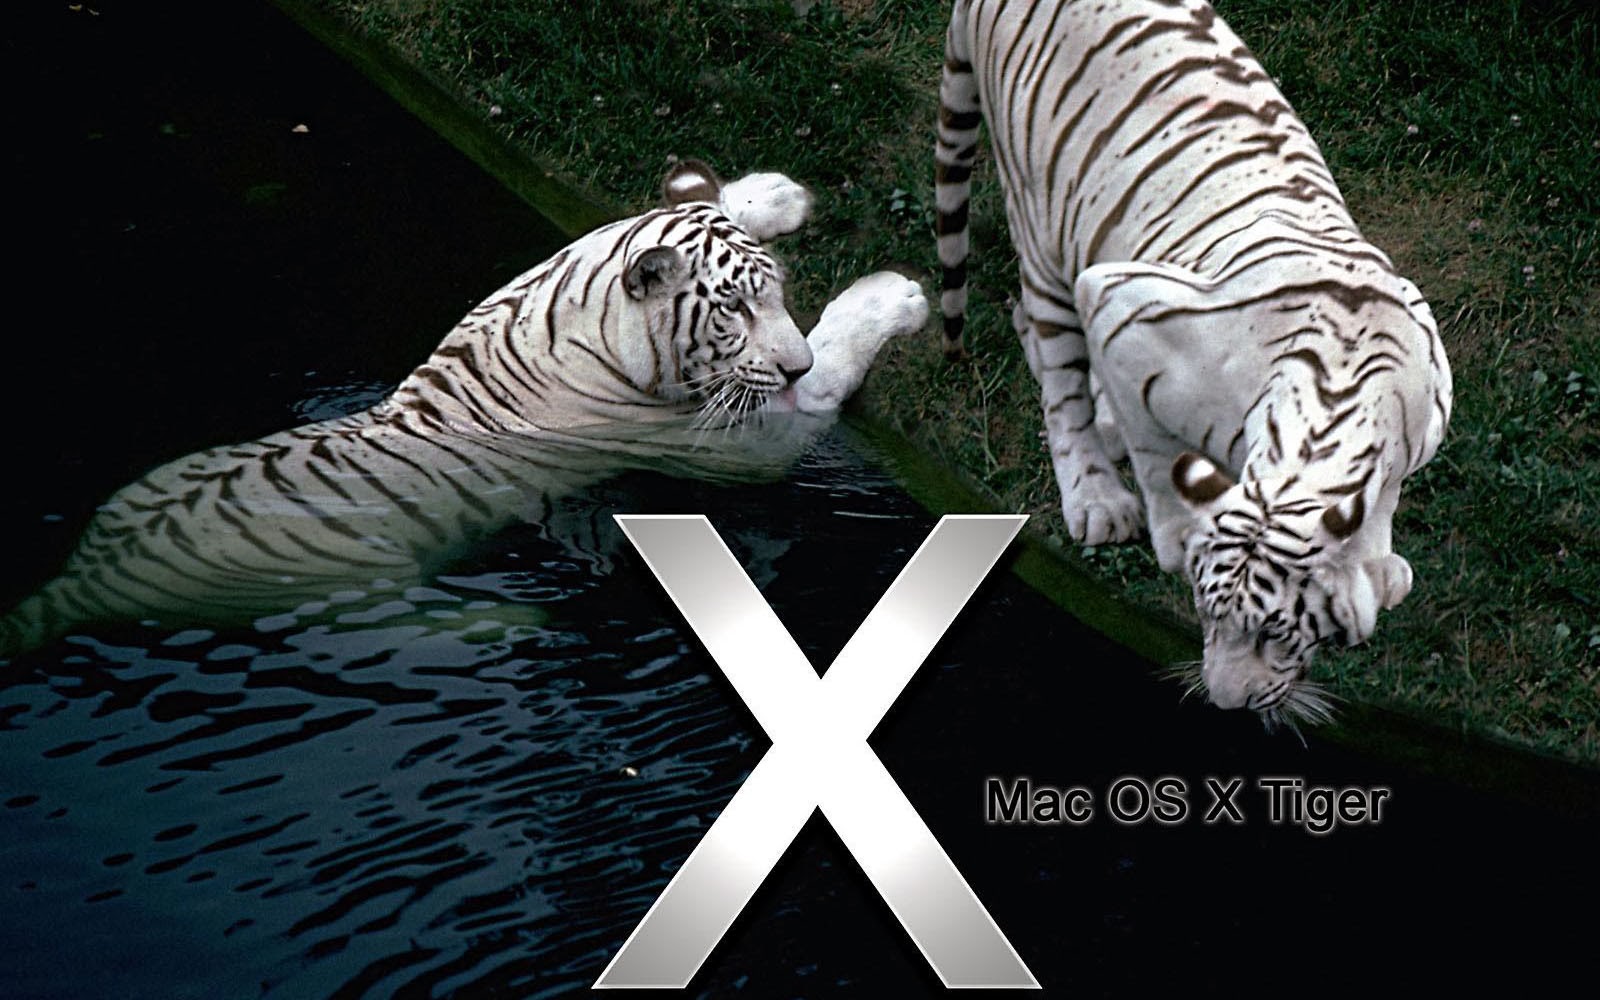 Mac Os X Tiger Wallpaper Desktop